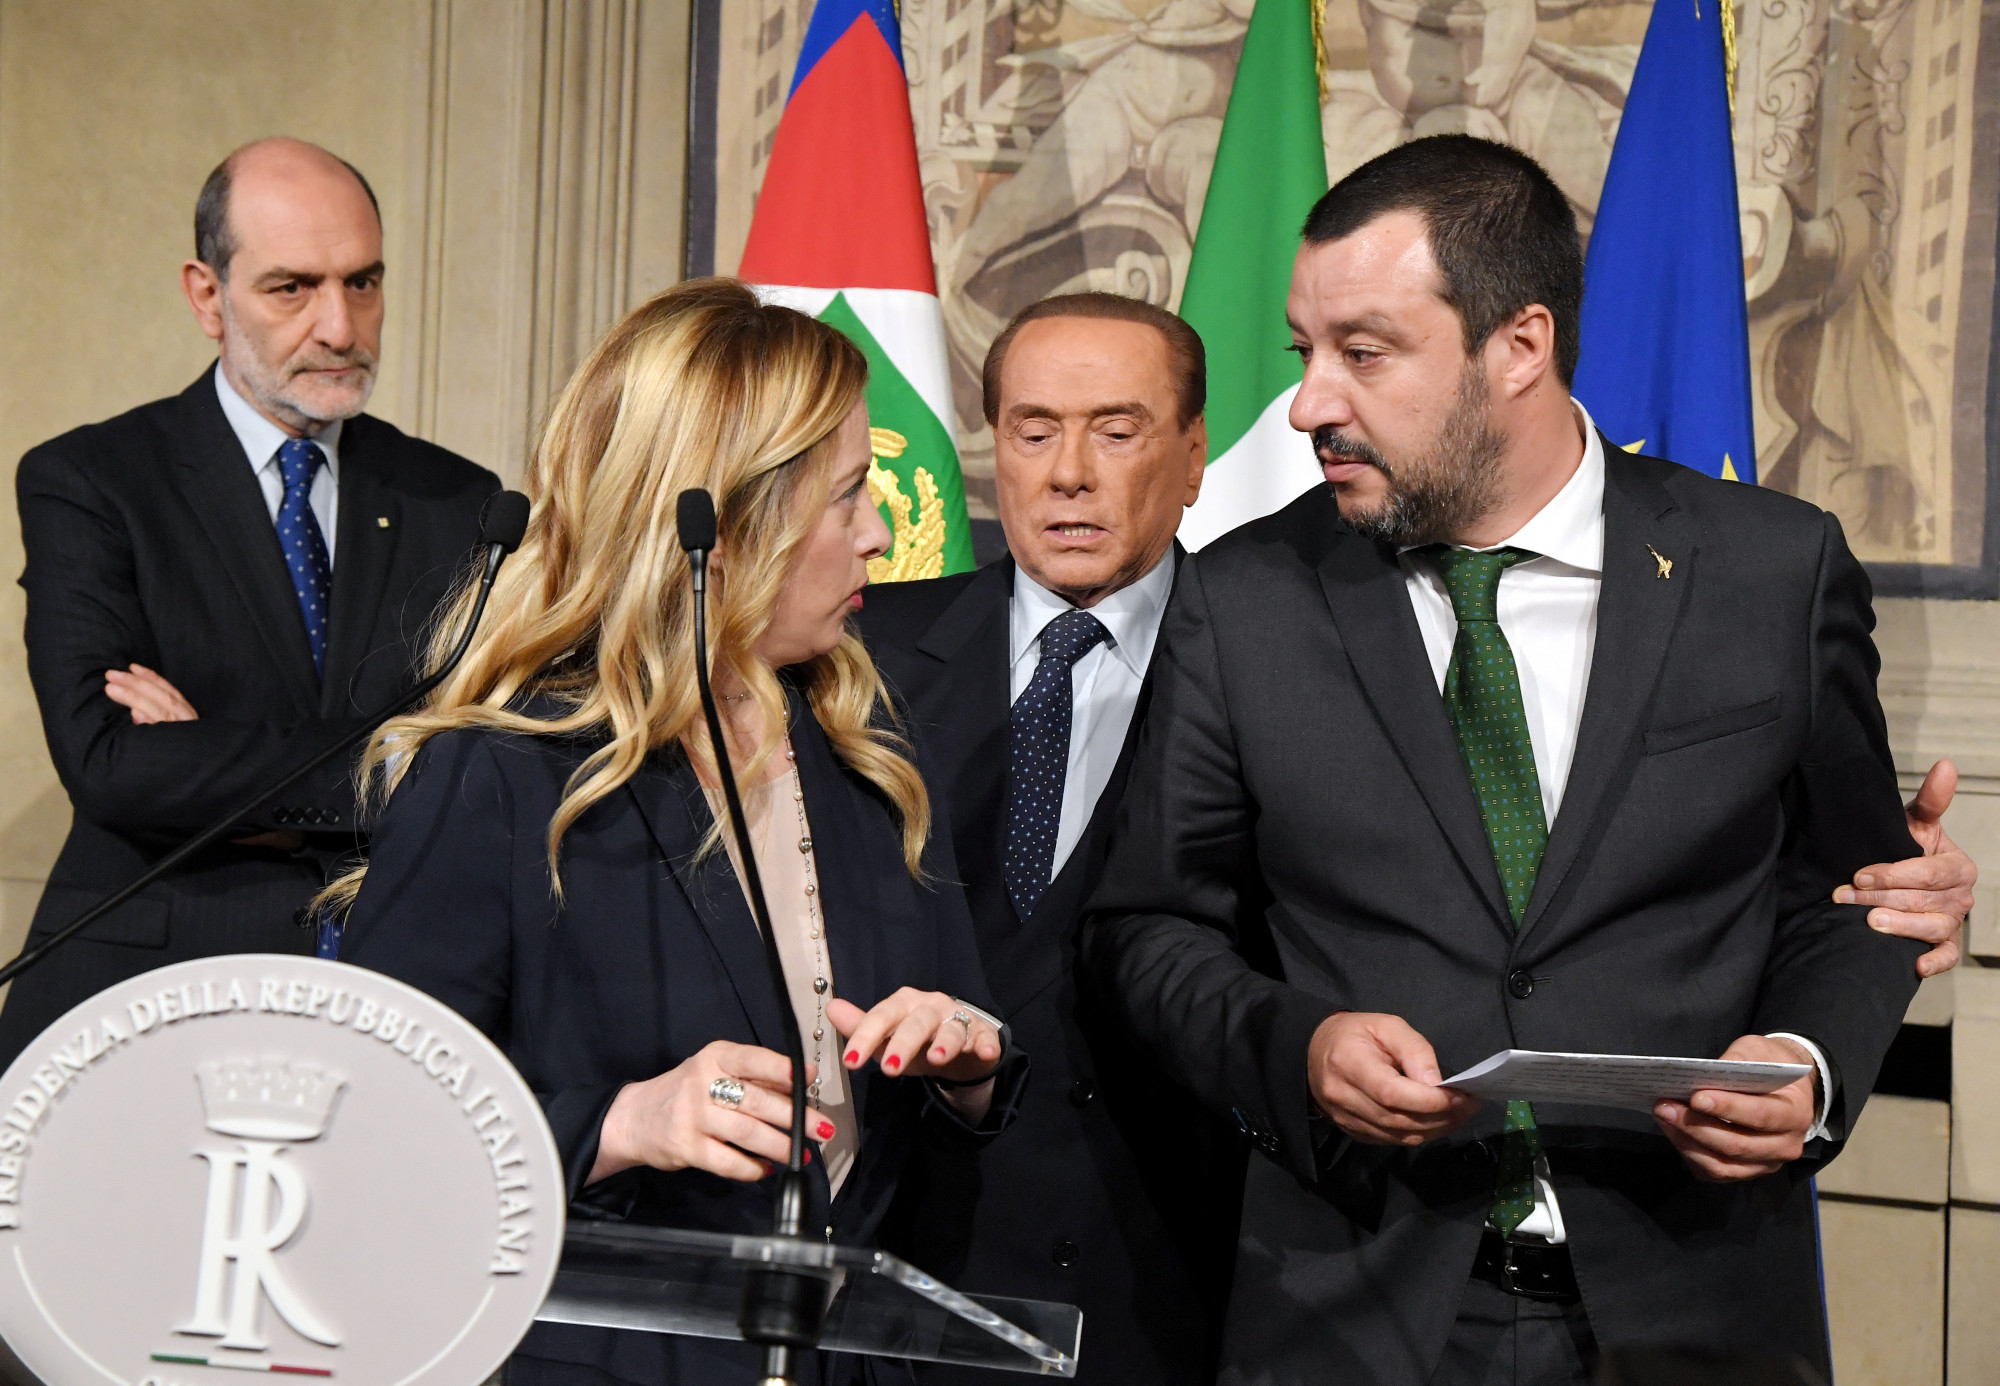 A La Stampa arról írt, hogy Matteo Salvini az oroszokkal összejátszva buktathatta meg az olasz kormányt